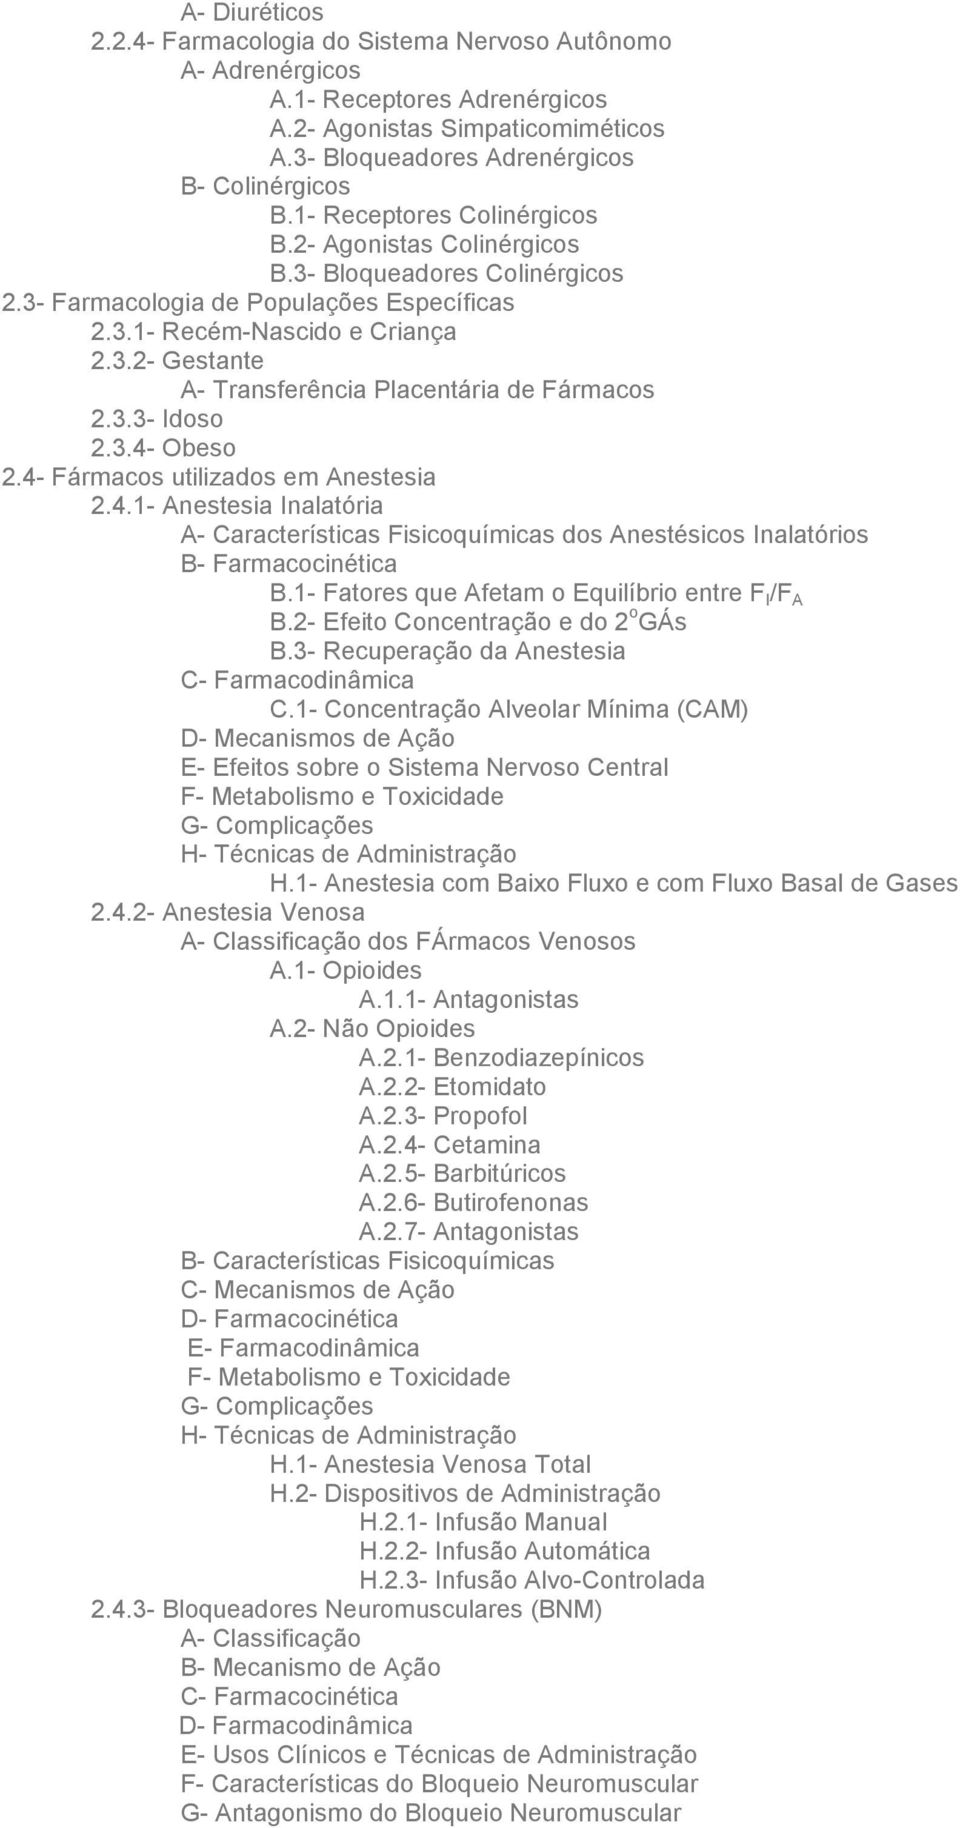 3.3- Idoso 2.3.4- Obeso 2.4- Fármacos utilizados em Anestesia 2.4.1- Anestesia Inalatória A- Características Fisicoquímicas dos Anestésicos Inalatórios B- Farmacocinética B.